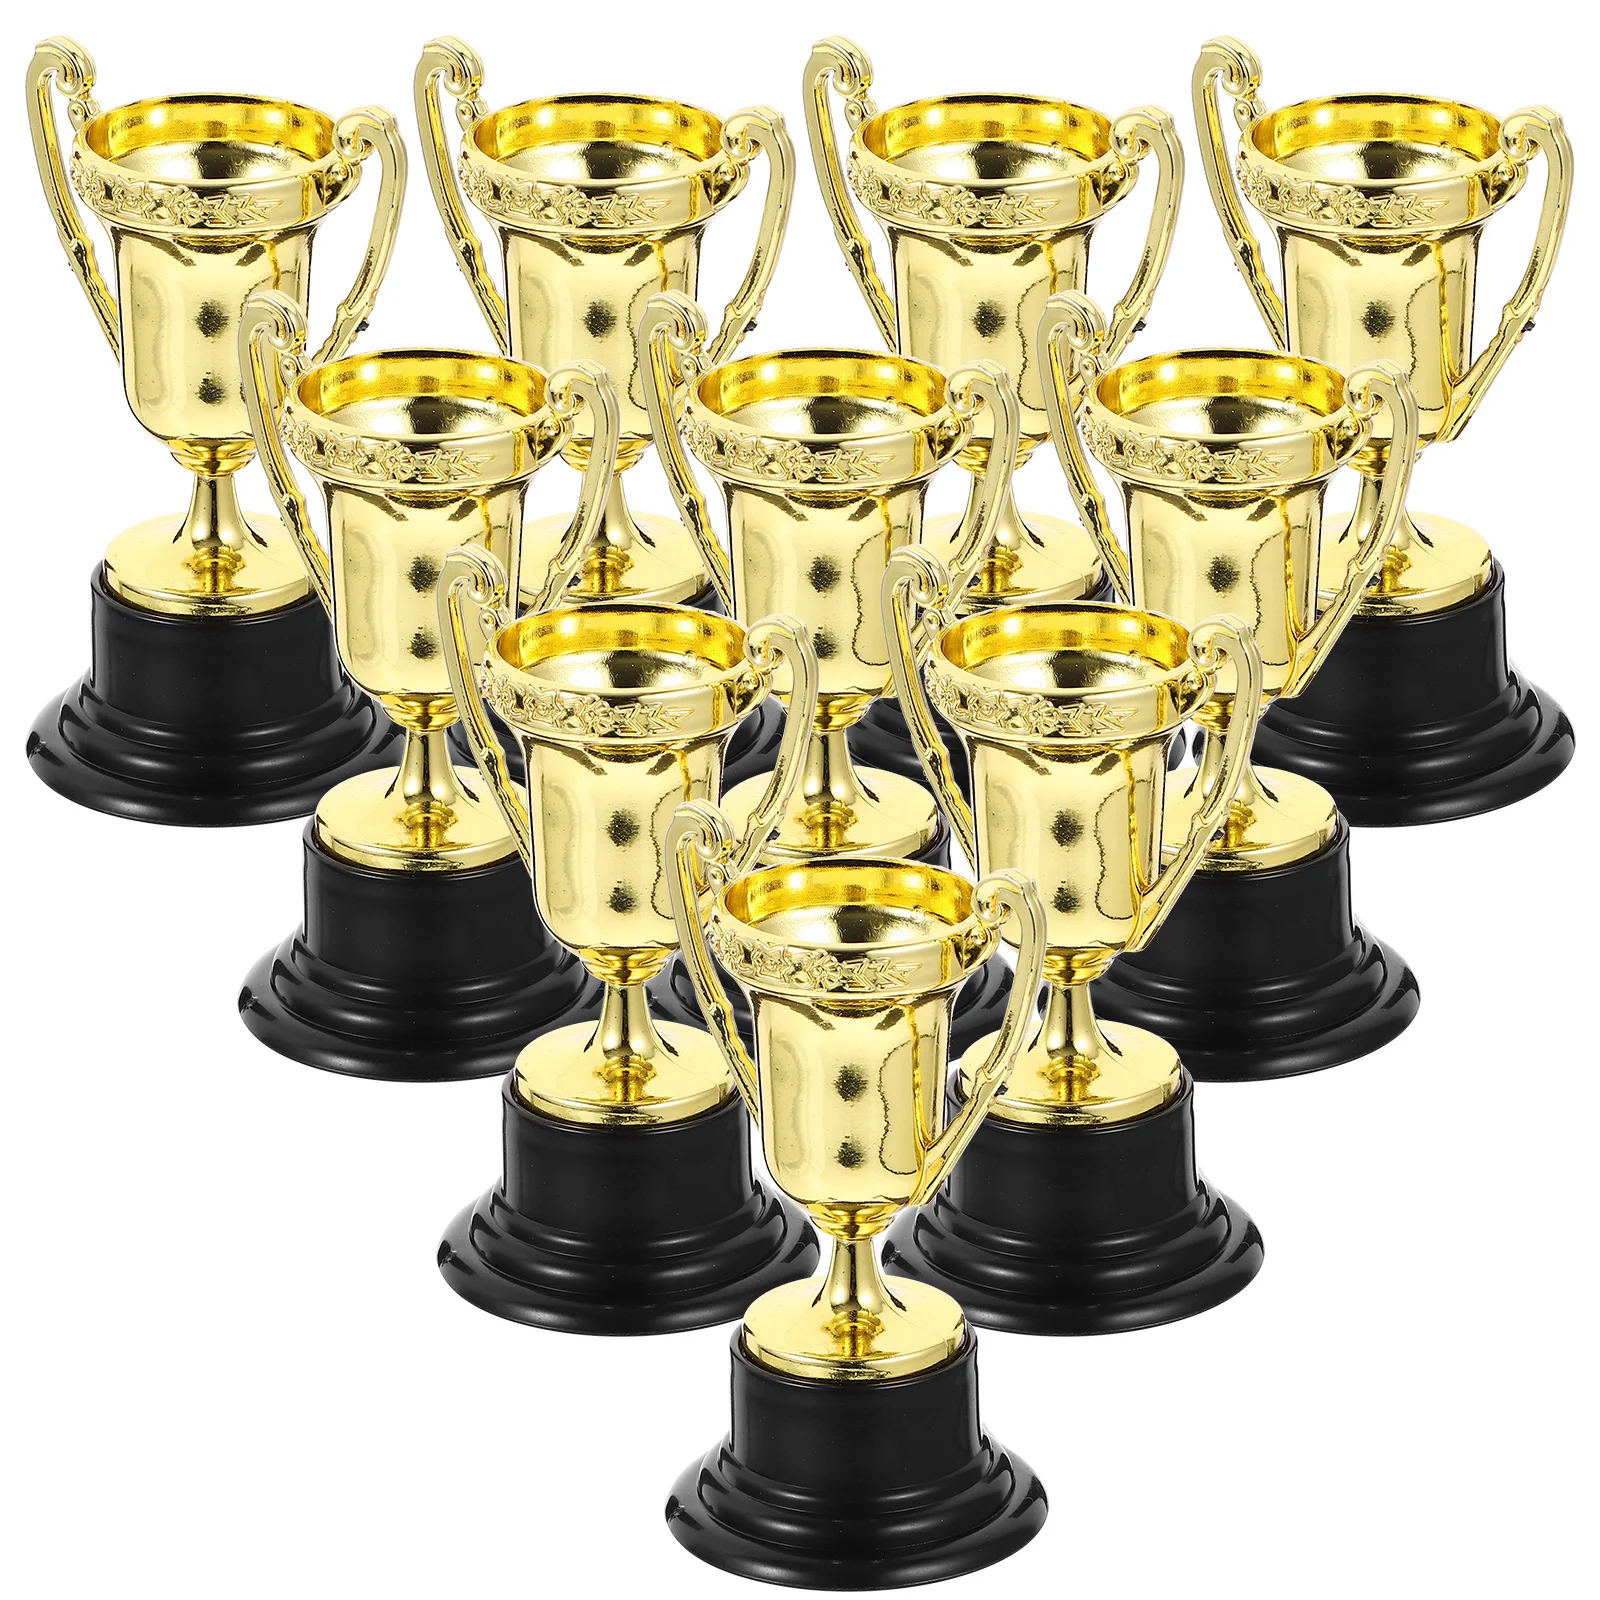 

Трофей тропические награды Детские награды мини-Кубок награда игра победитель медали спортивные баскетбольные соревнования ранние Классические Золотые награды